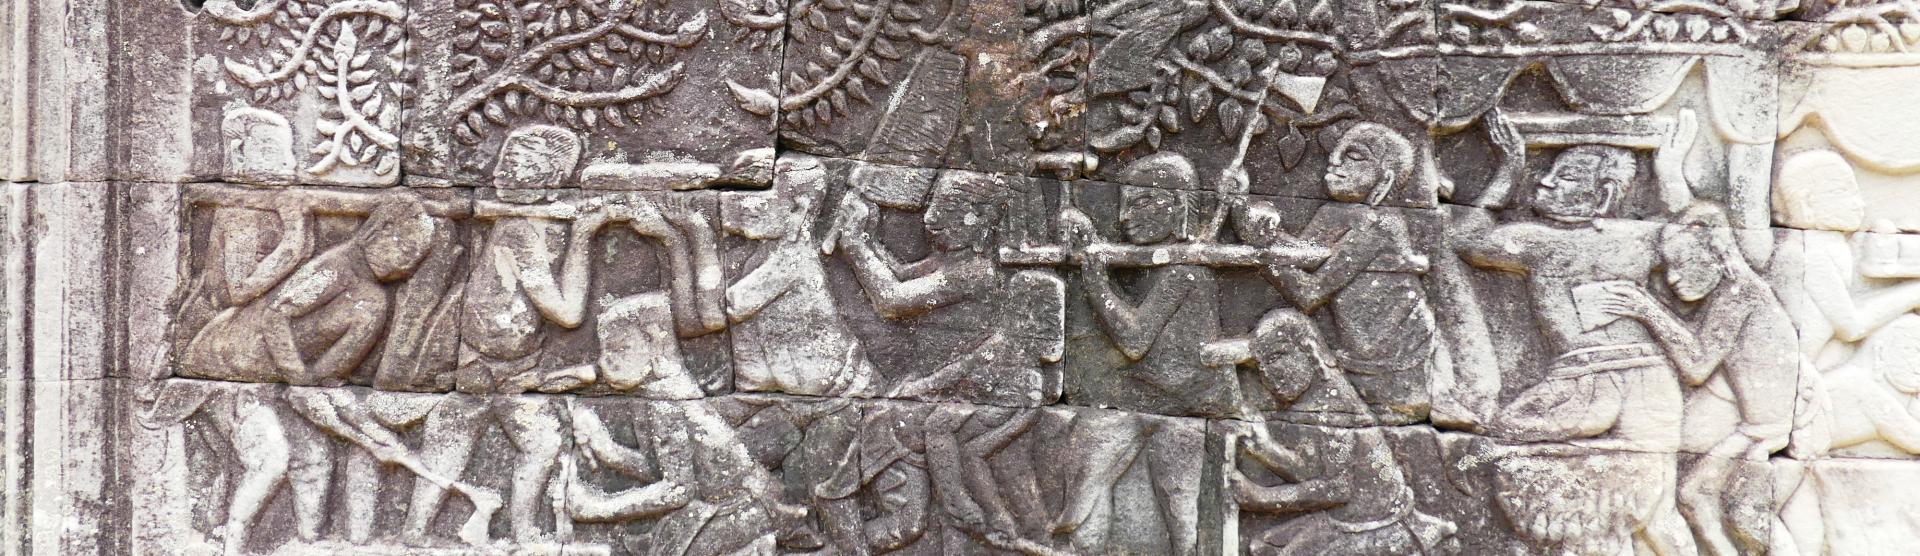 Mural de los trabajadores de la piedra, Templo Bayon, Angkor, Siam Reap, Camboya